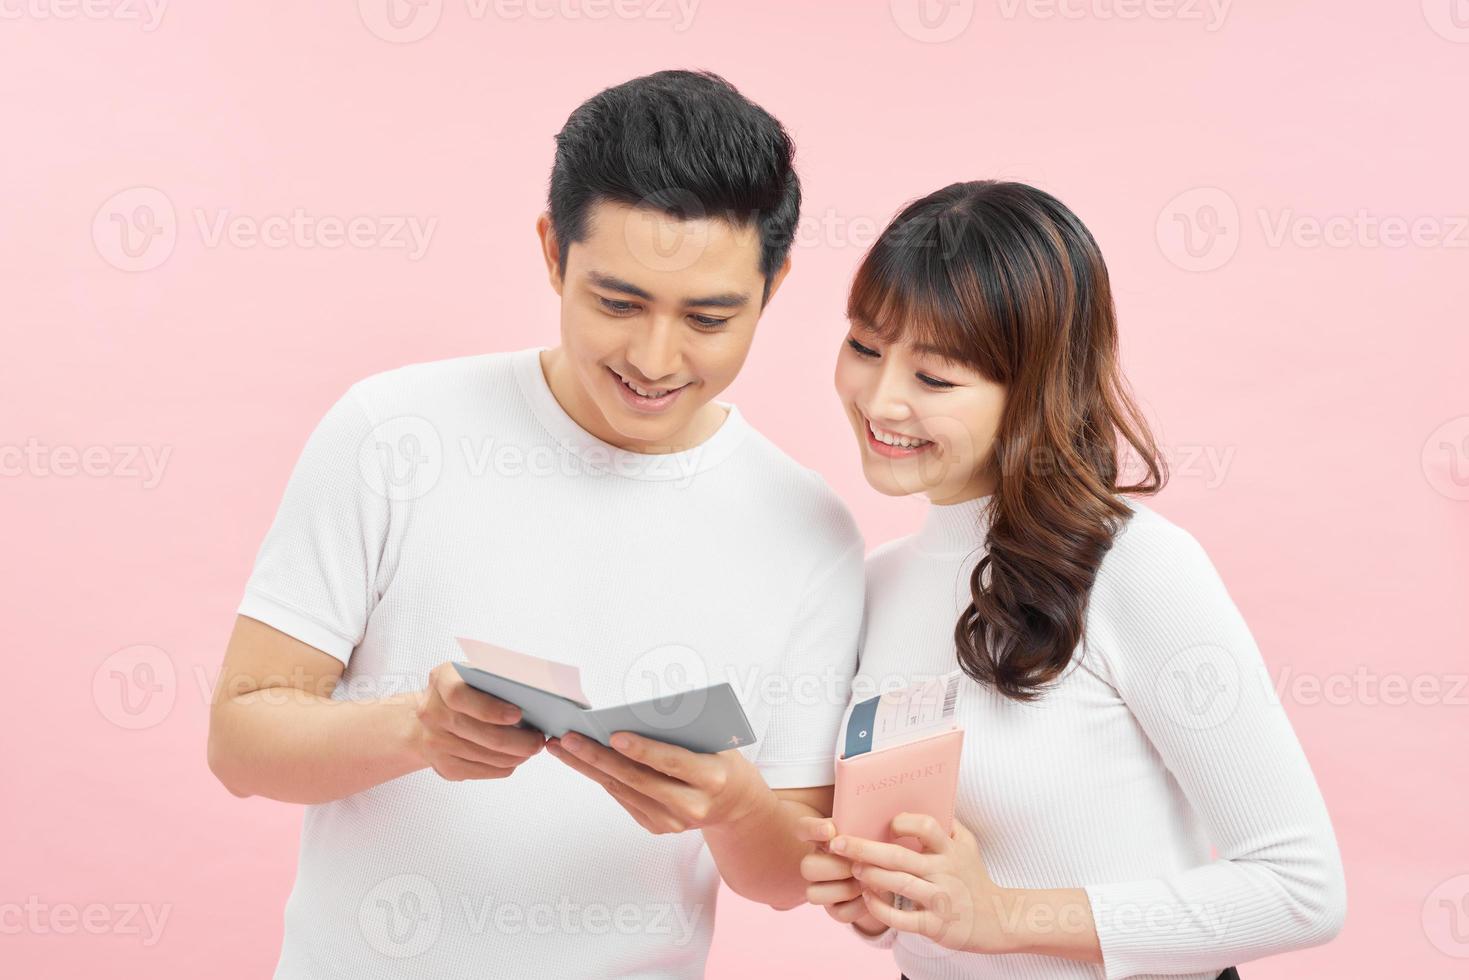 retrato de una atractiva y alegre pareja joven que se encuentra aislada sobre un fondo rosado, mostrando pasaporte con boletos de avión foto